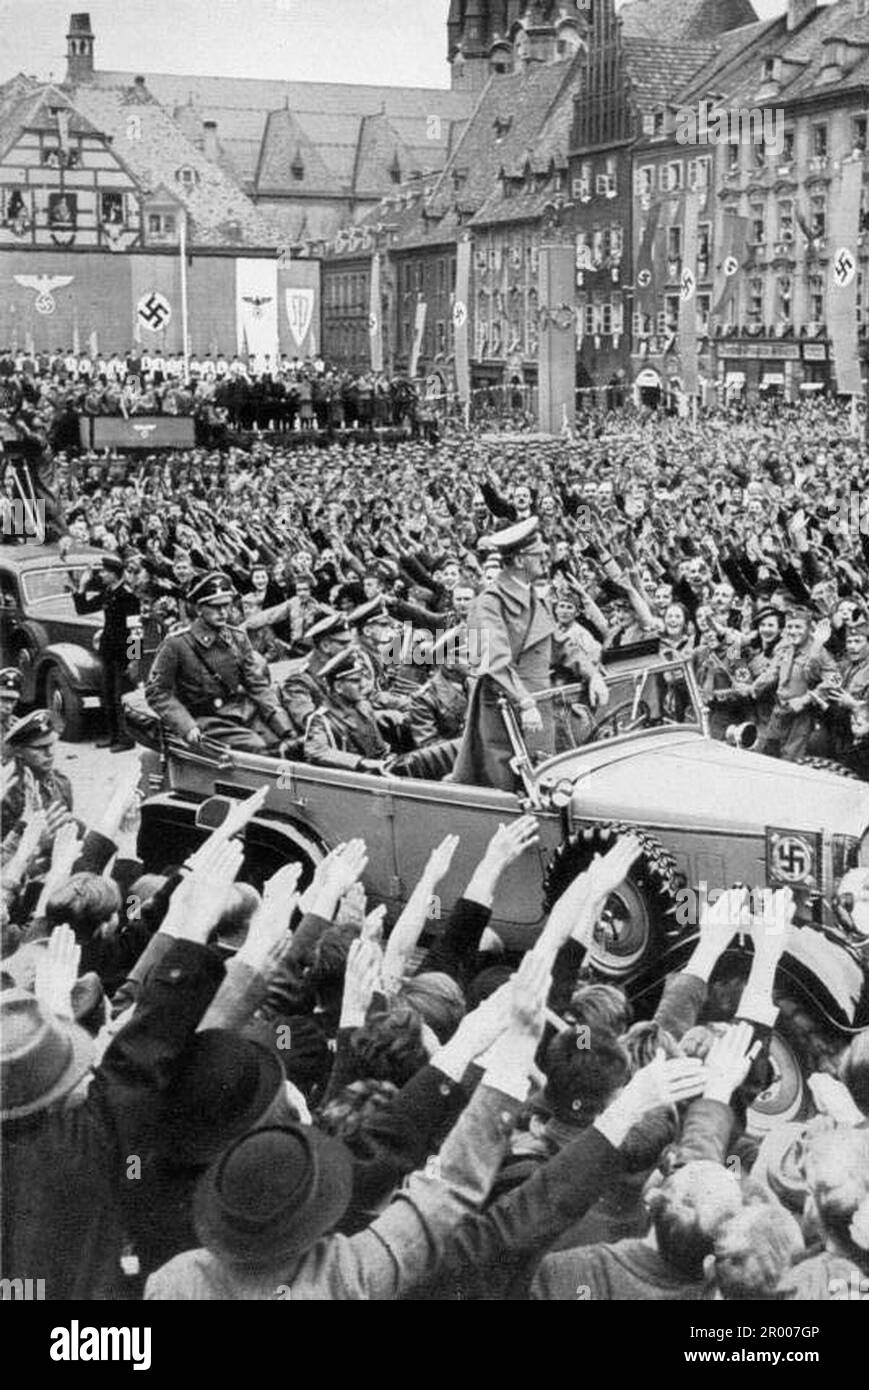 Adolf Hitler fährt am 3. Oktober 1938 nach der Annexion des Sudetenland durch die Menge in Eger/Cheb. Nach der Annexion Österreichs verlangte Hitler, dass er in die Region Sudeten der Tschechoslowakei aufgenommen wird. Auf der Münchner Konferenz im September 1938 stimmten die westlichen Mächte dem zu, und die nazis besetzten das Gebiet. Kurz nachdem Hitler sein Versprechen gebrochen hatte und in den Rest der Tschechoslowakei einmarschierte, widmete er sich Polen. Stockfoto